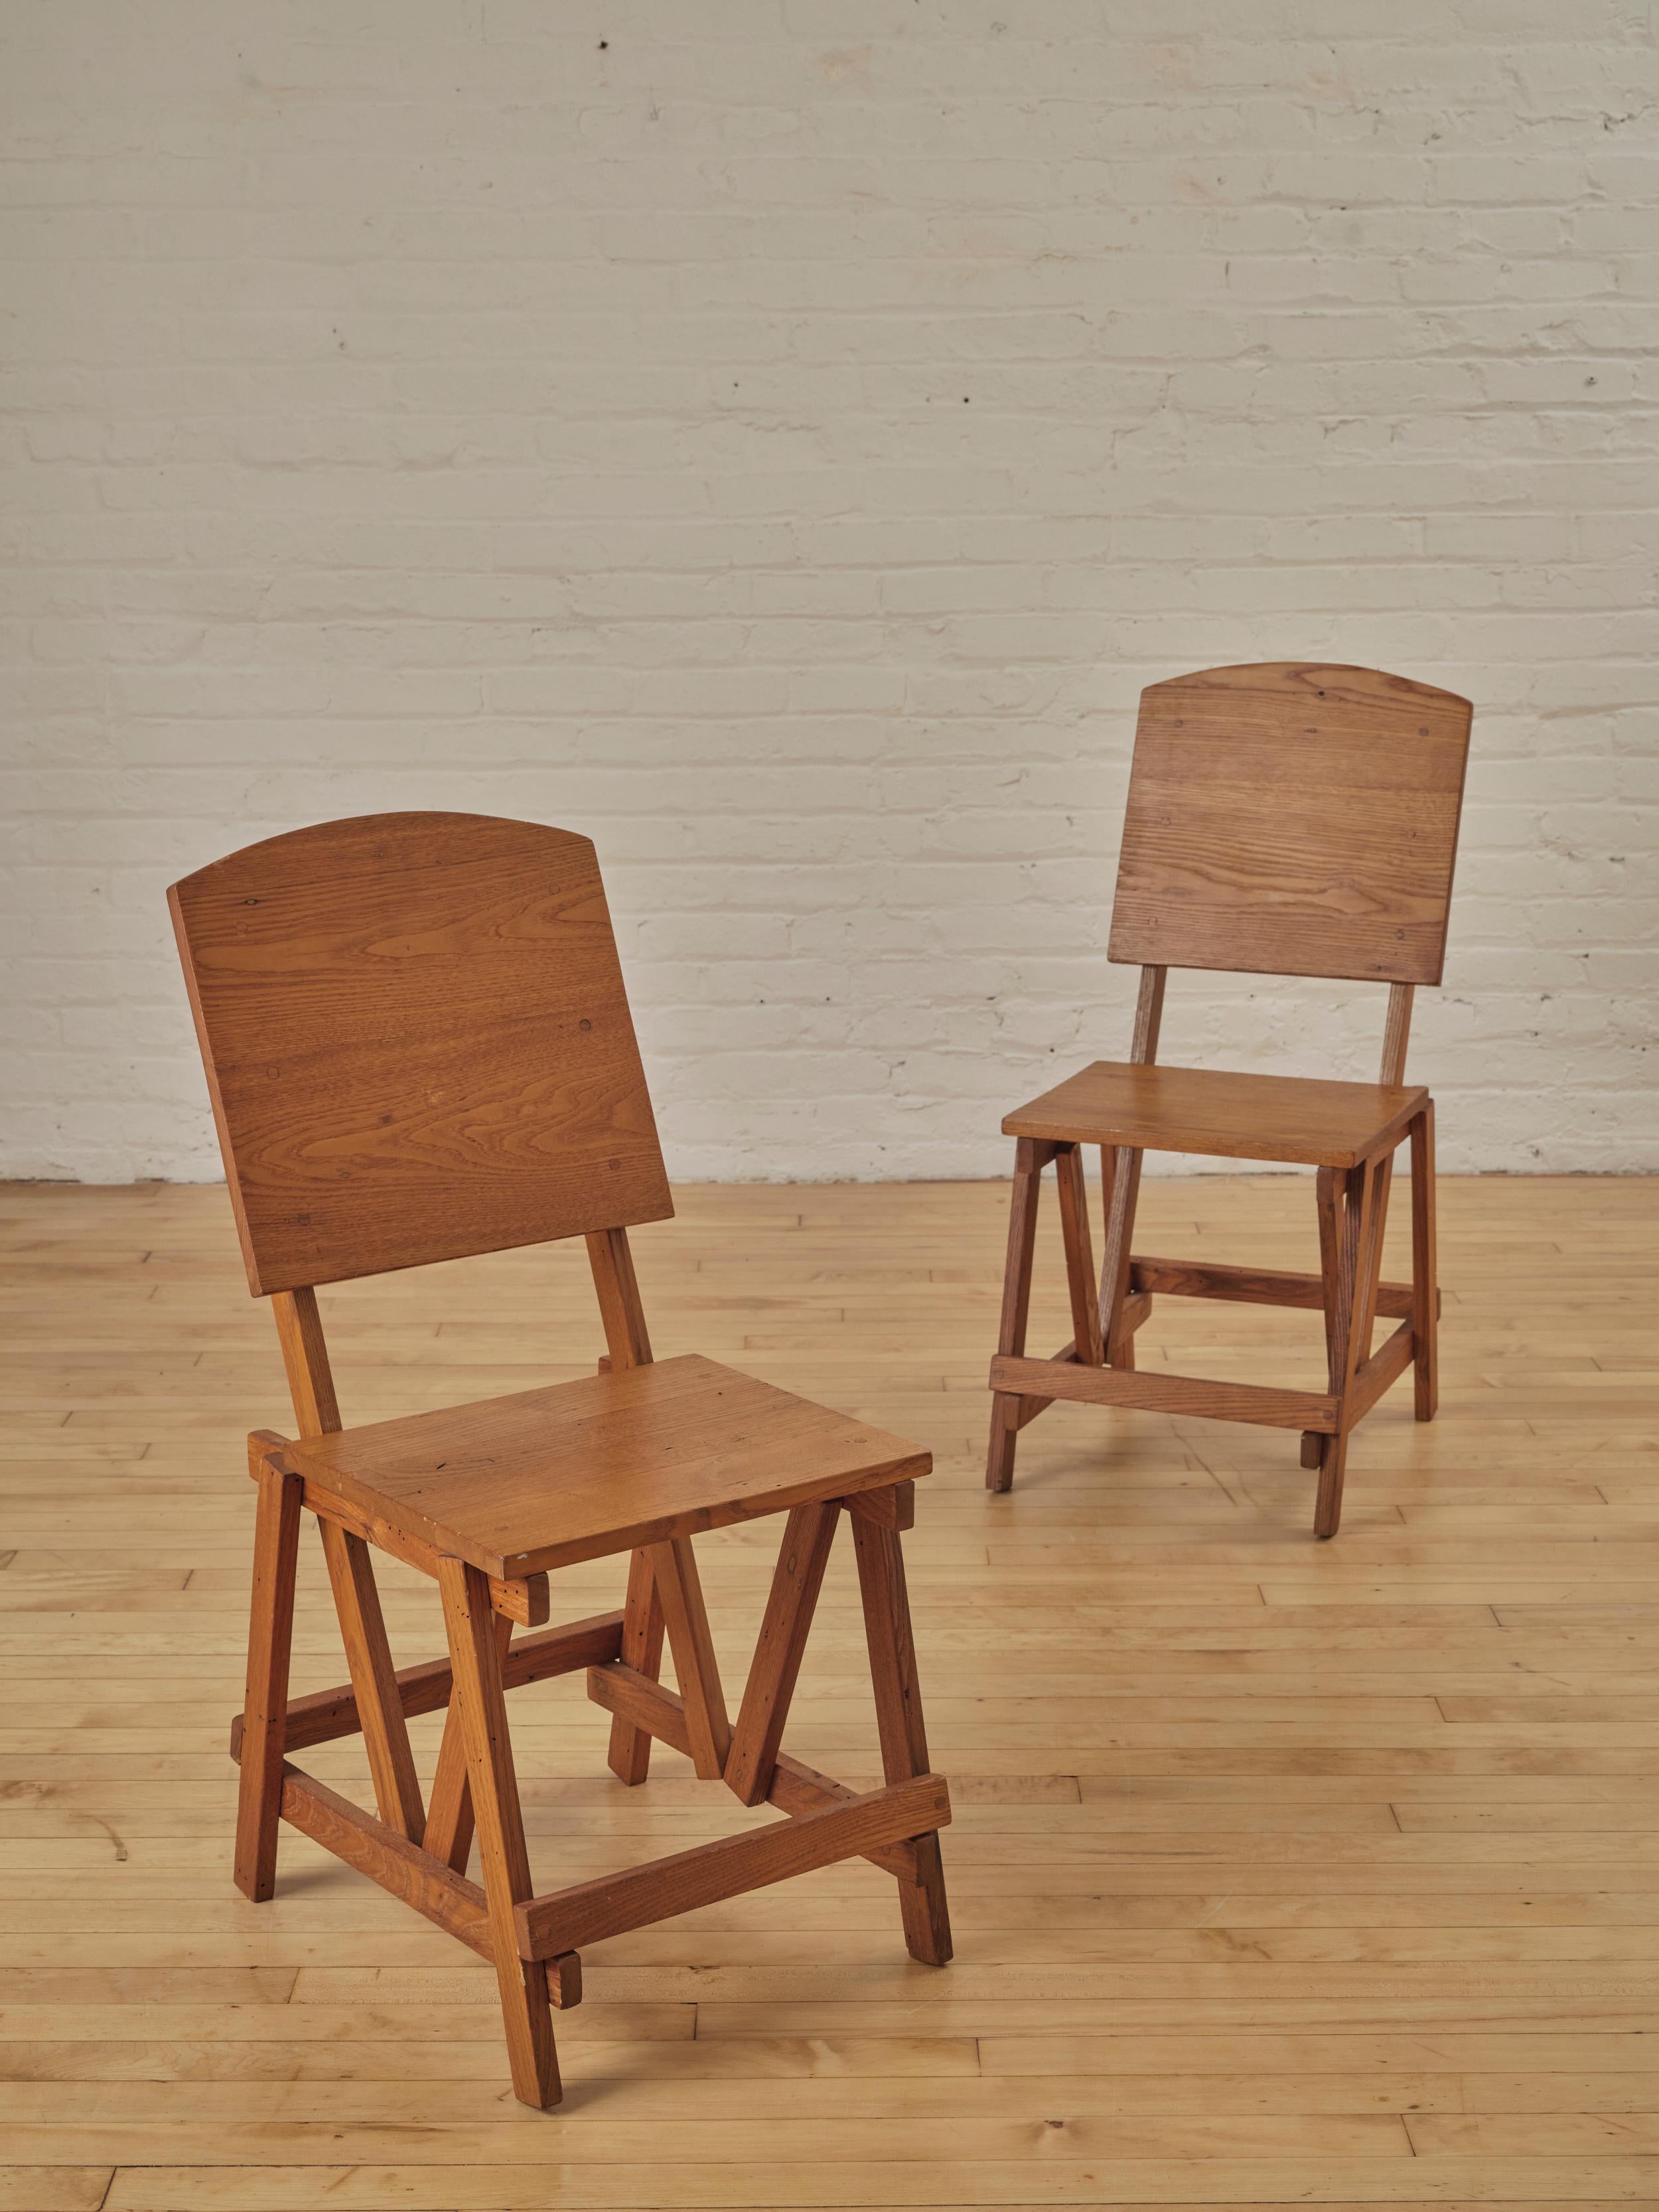 Paire de chaises d'appoint en chêne de style architectural constructiviste. Ces chaises en chêne massif sont bien construites et se caractérisent par une menuiserie à chevilles et des angles architecturaux.

